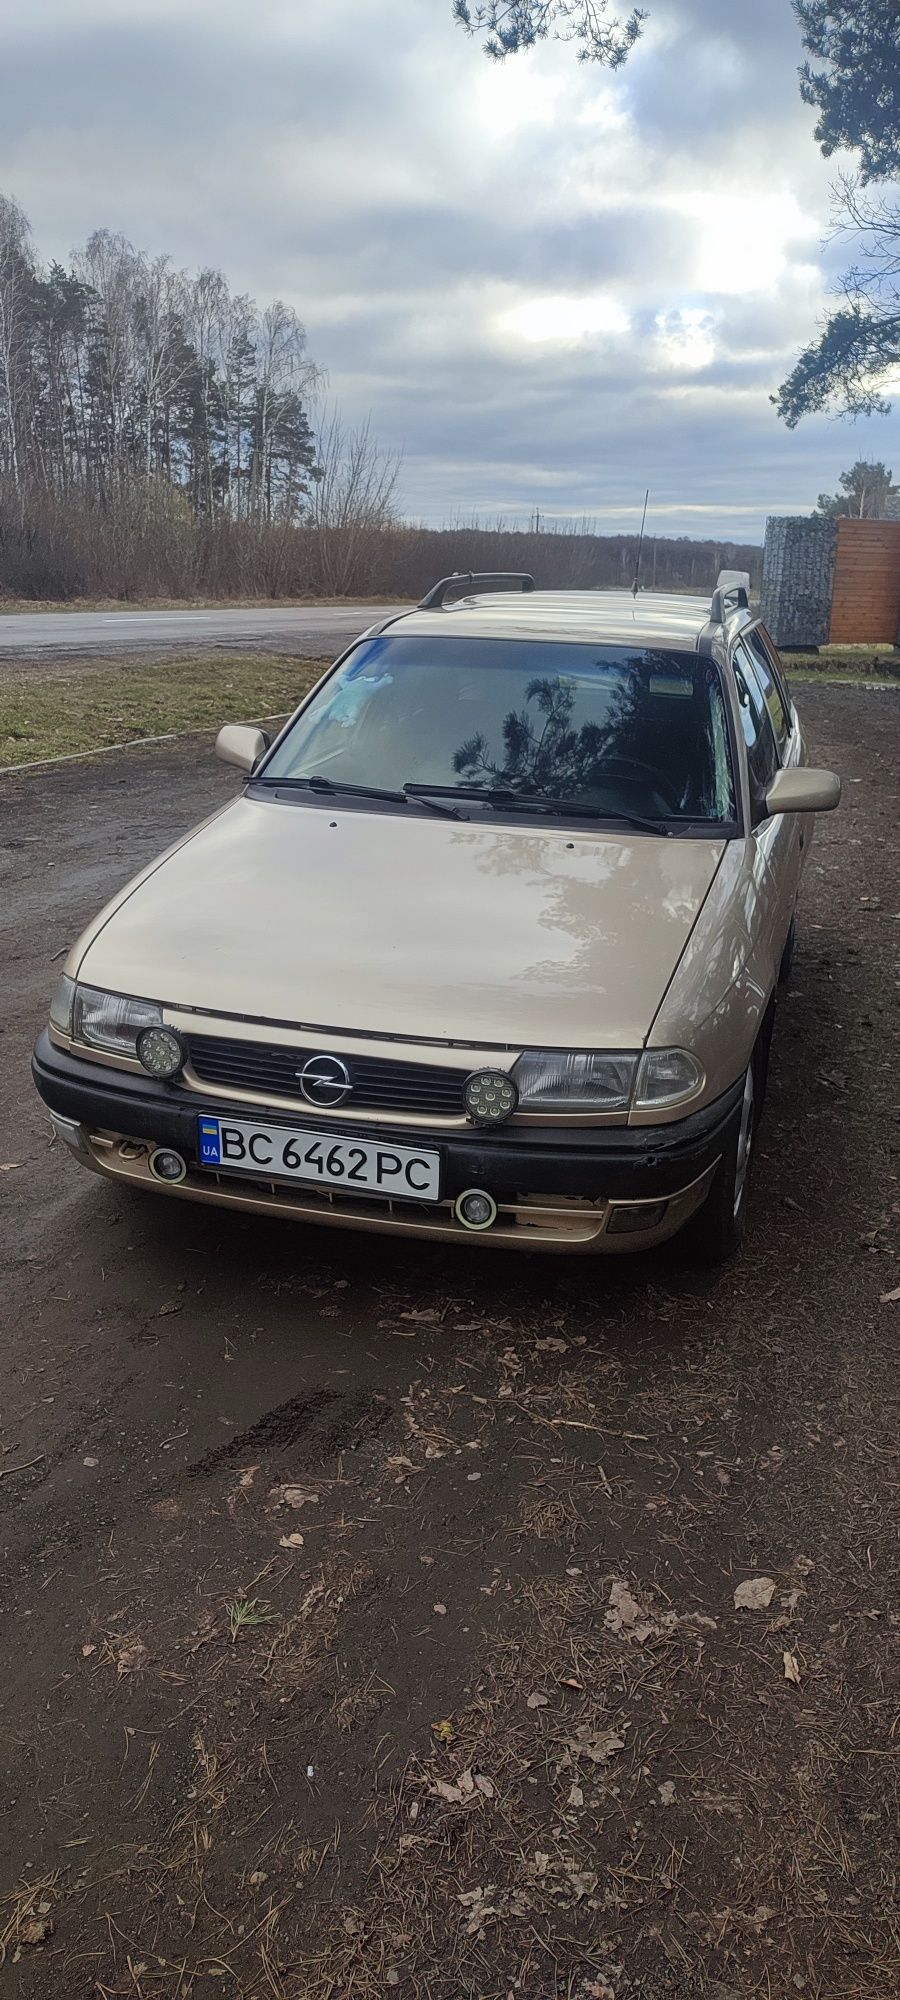 Opel Astra F 1.6 16v